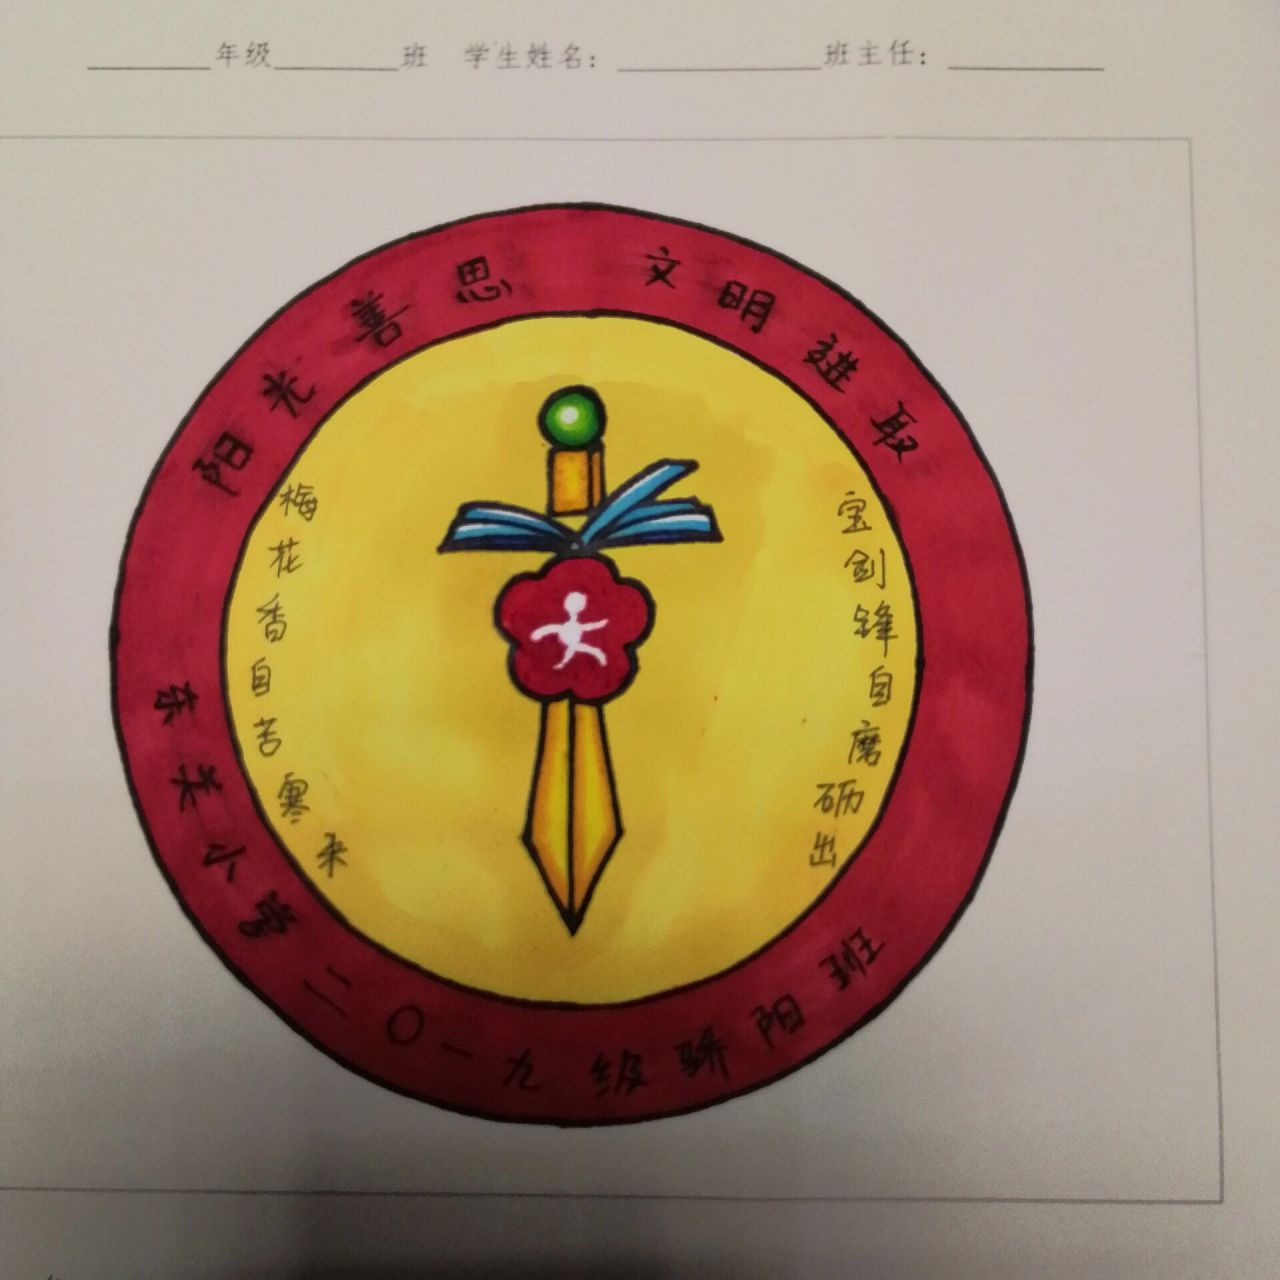 班级徽章logo设计手绘图片